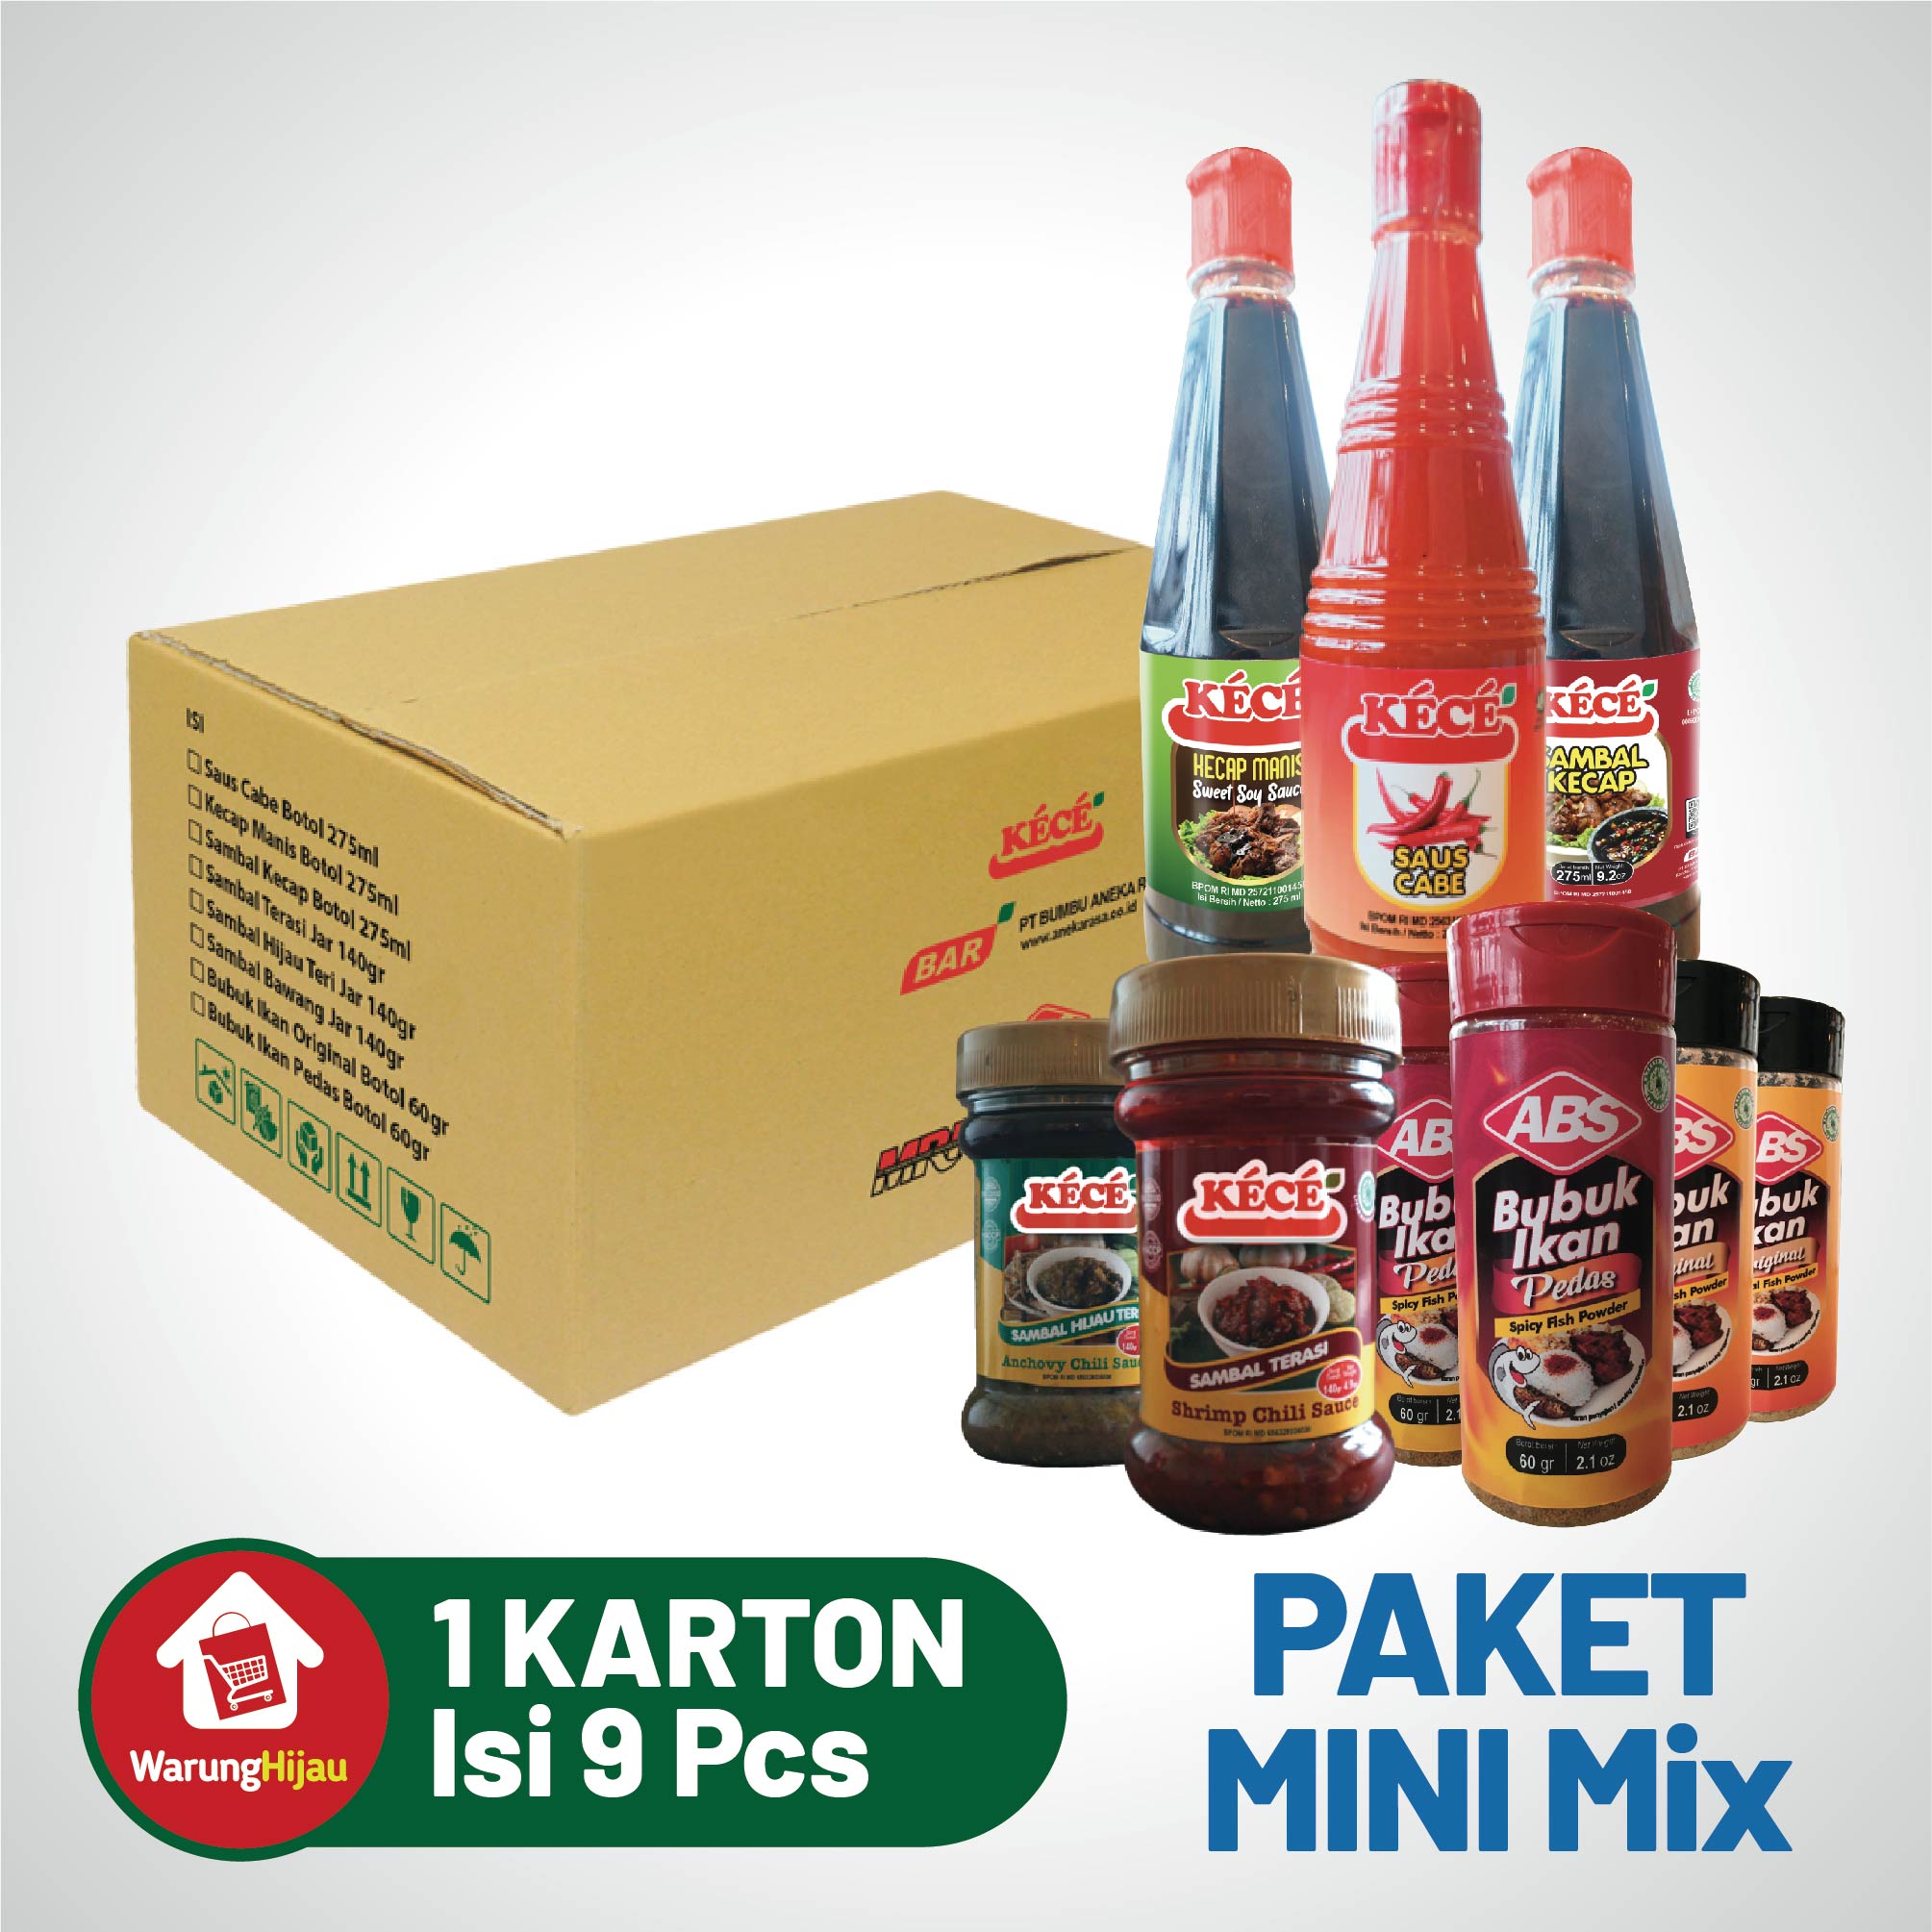 Paket Parcel Mini Mix - 9 Pcs